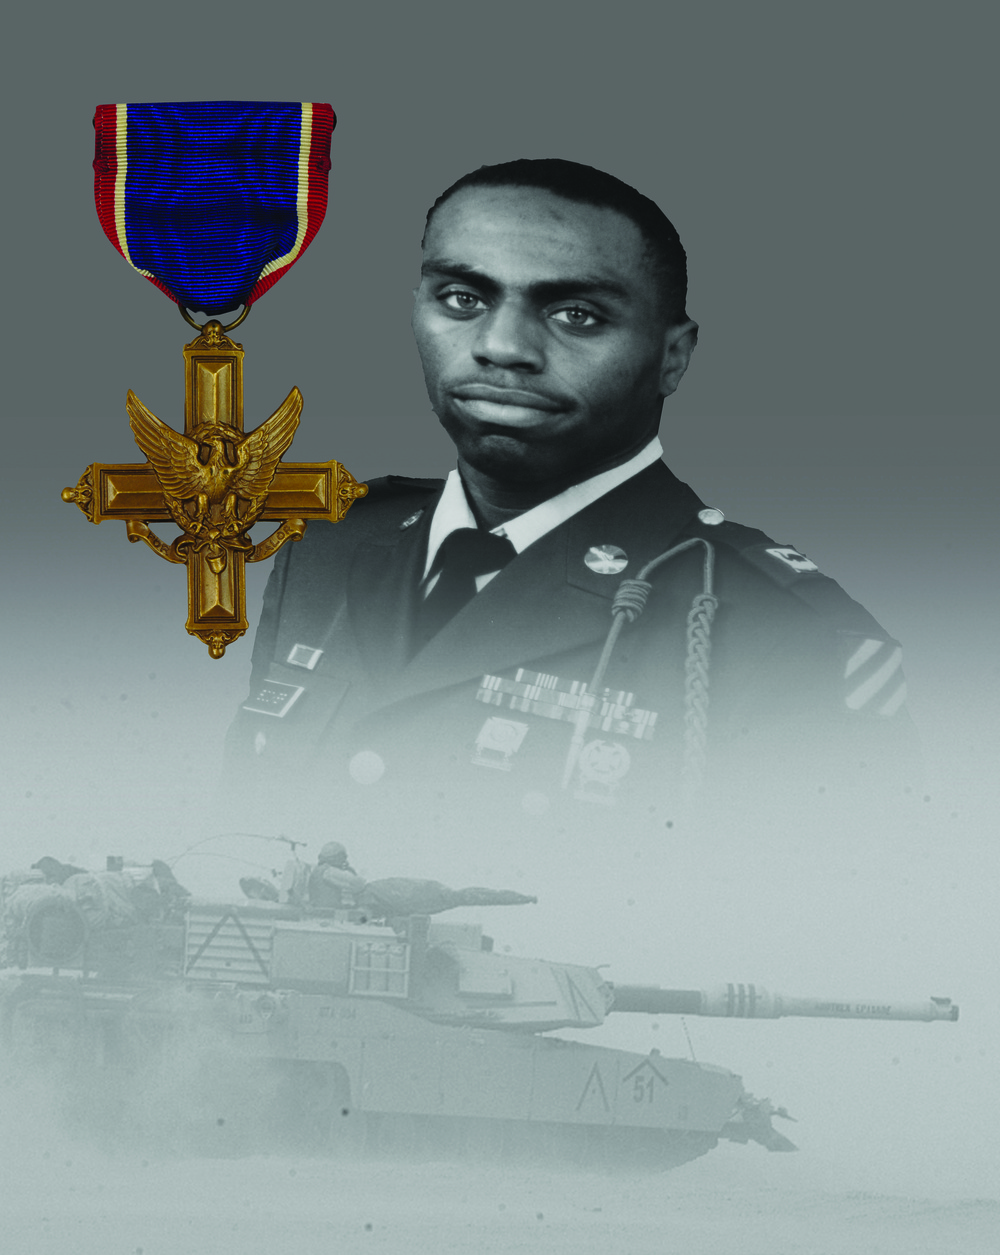 “Thunder Run” hero receives the nation’s second highest award for valor